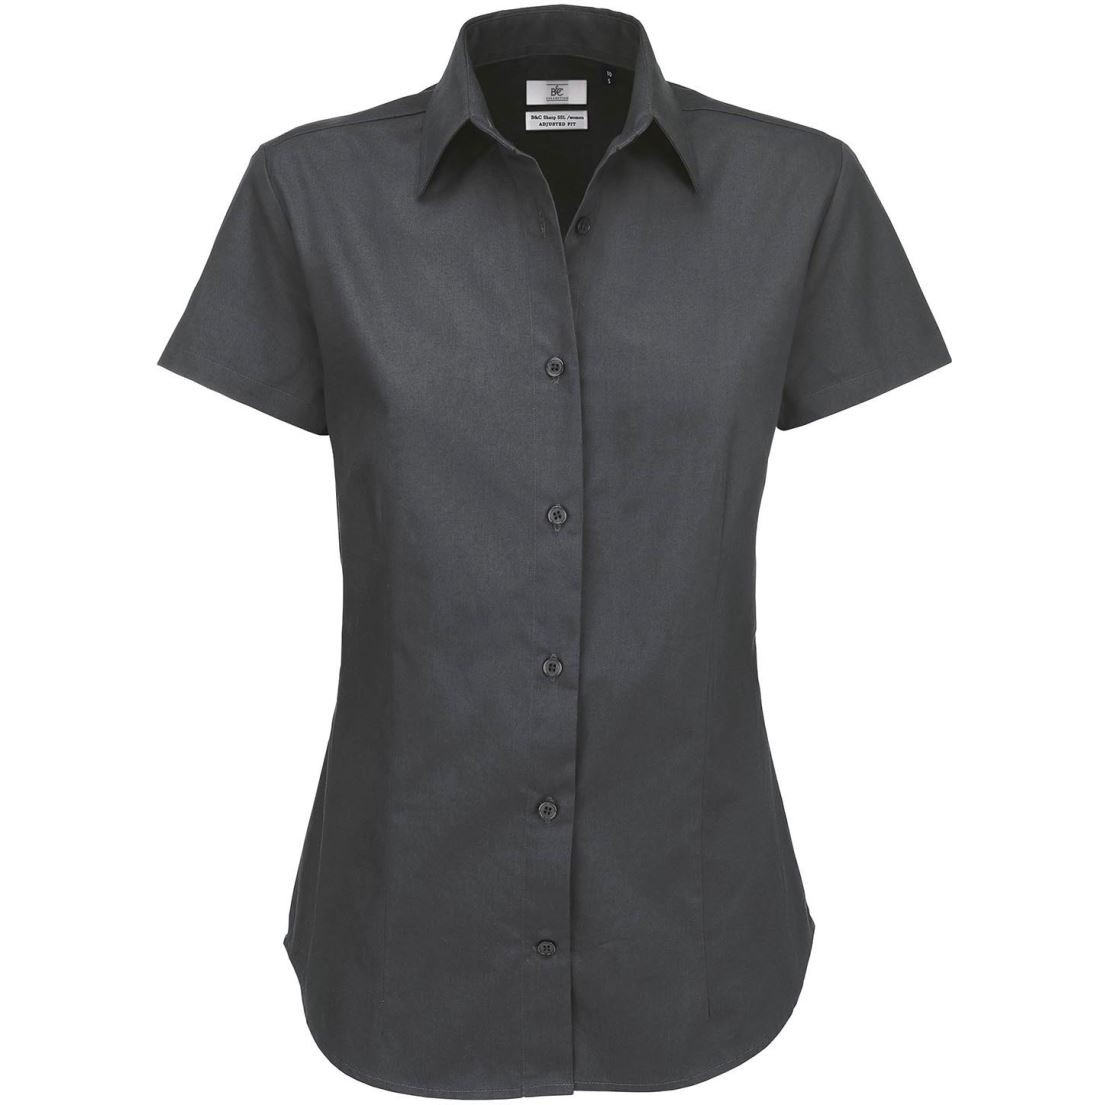 Dámská keprová košile B&C Sharp s krátkým rukávem - tmavě šedá, M